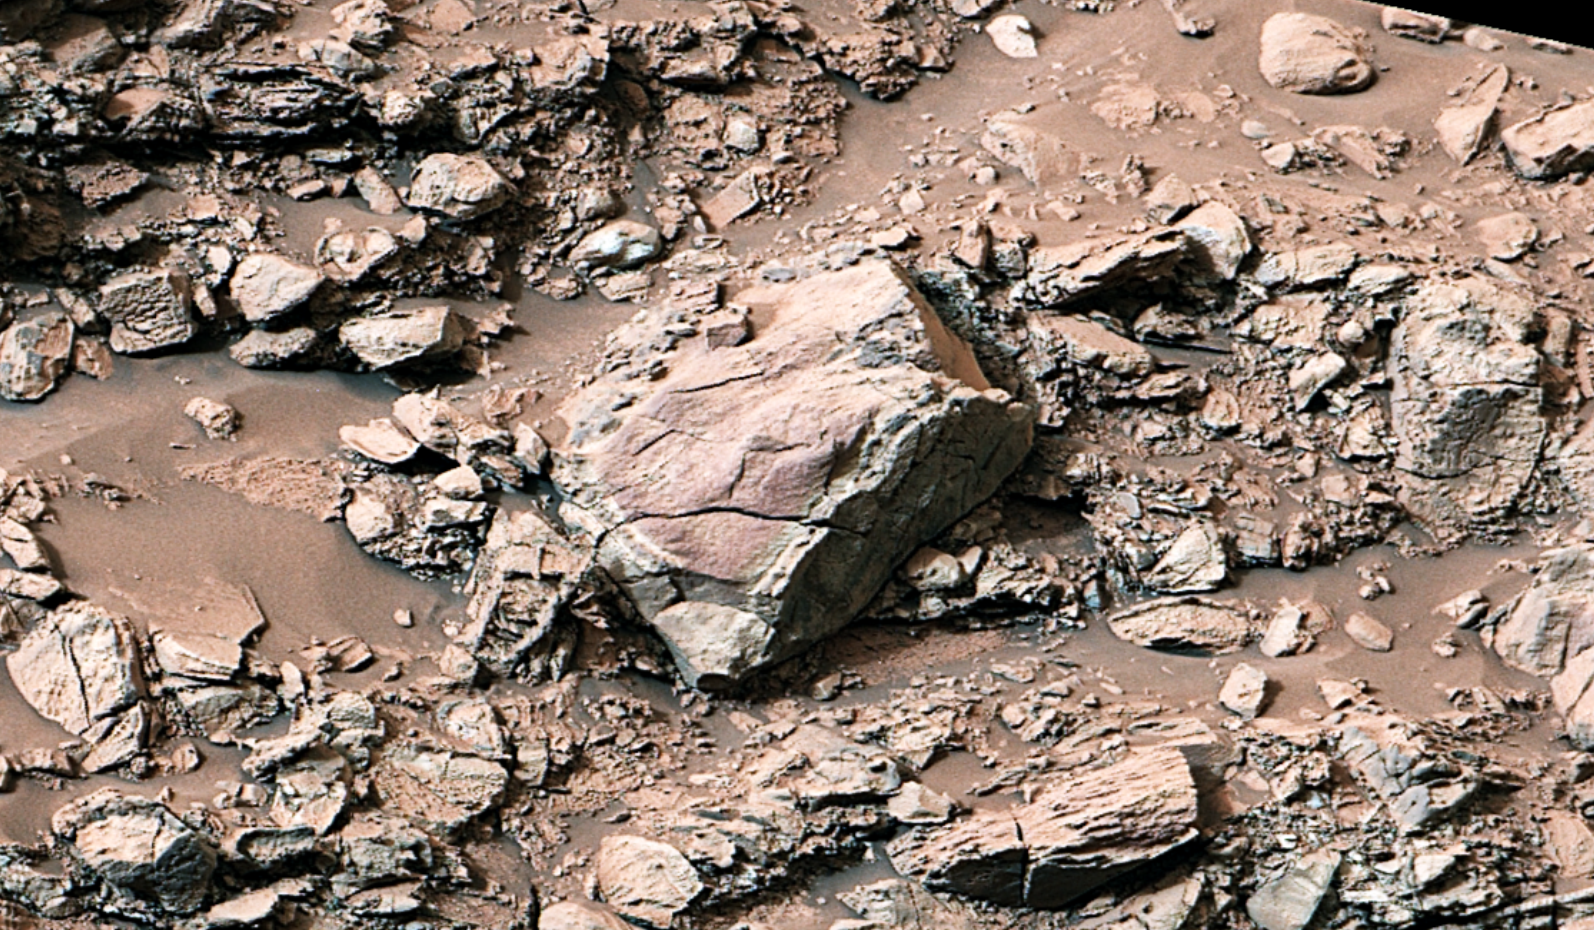 Марсоход Curiosity обнаружил камни, состоящие из чистой серы. Это впервые на Красной планете          